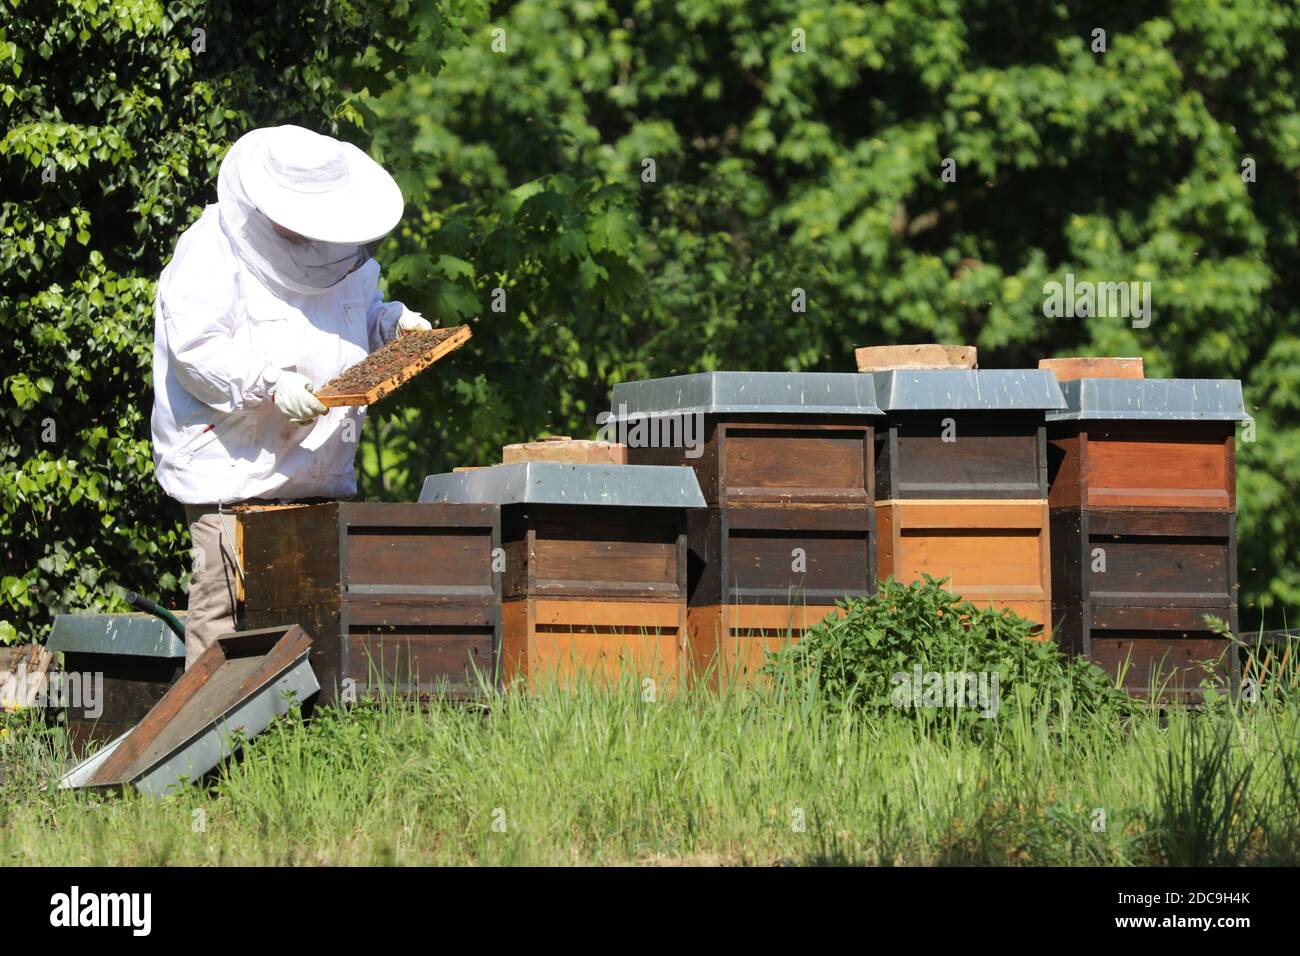 18.05.2019, Berlin, Berlin, Allemagne - apiculteur vérifiant un nid d'abeille de l'un de ses apiculteurs. 00S190518D487CAROEX.JPG [AUTORISATION DU MODÈLE : NON, PROPRIÉTÉ RÉF Banque D'Images